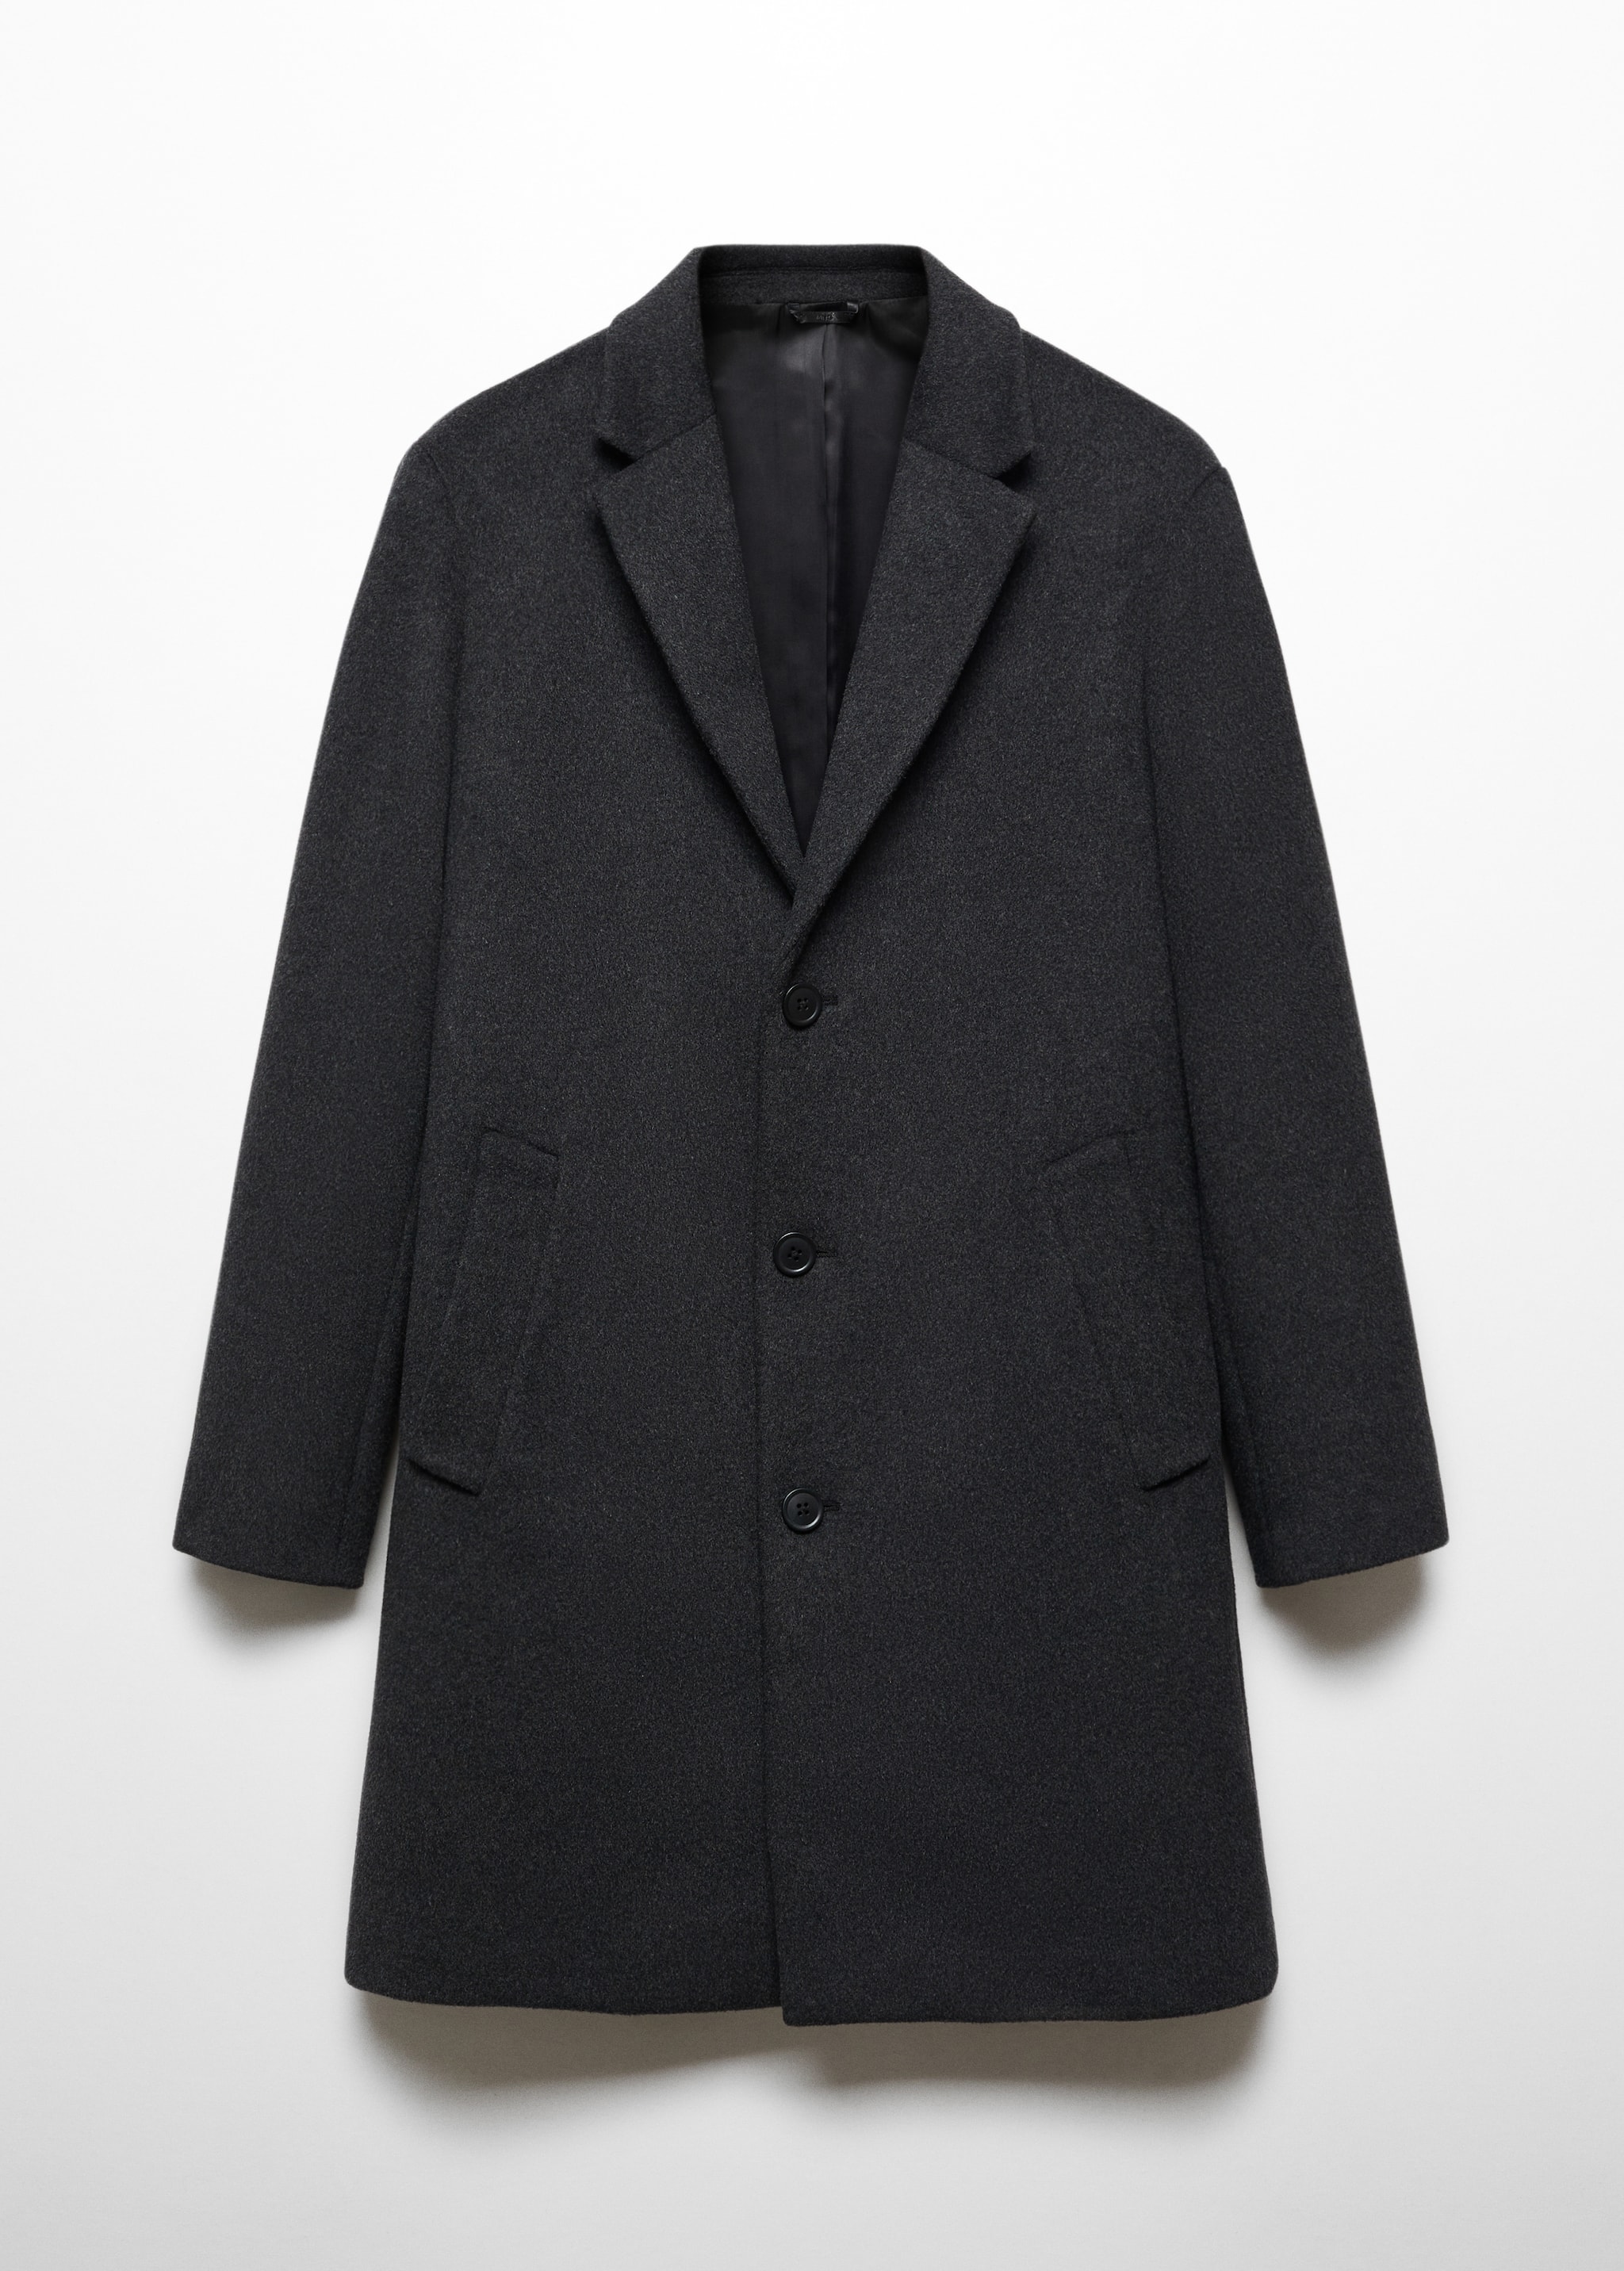 Пальто из переработанной шерсти - Изделие без модели